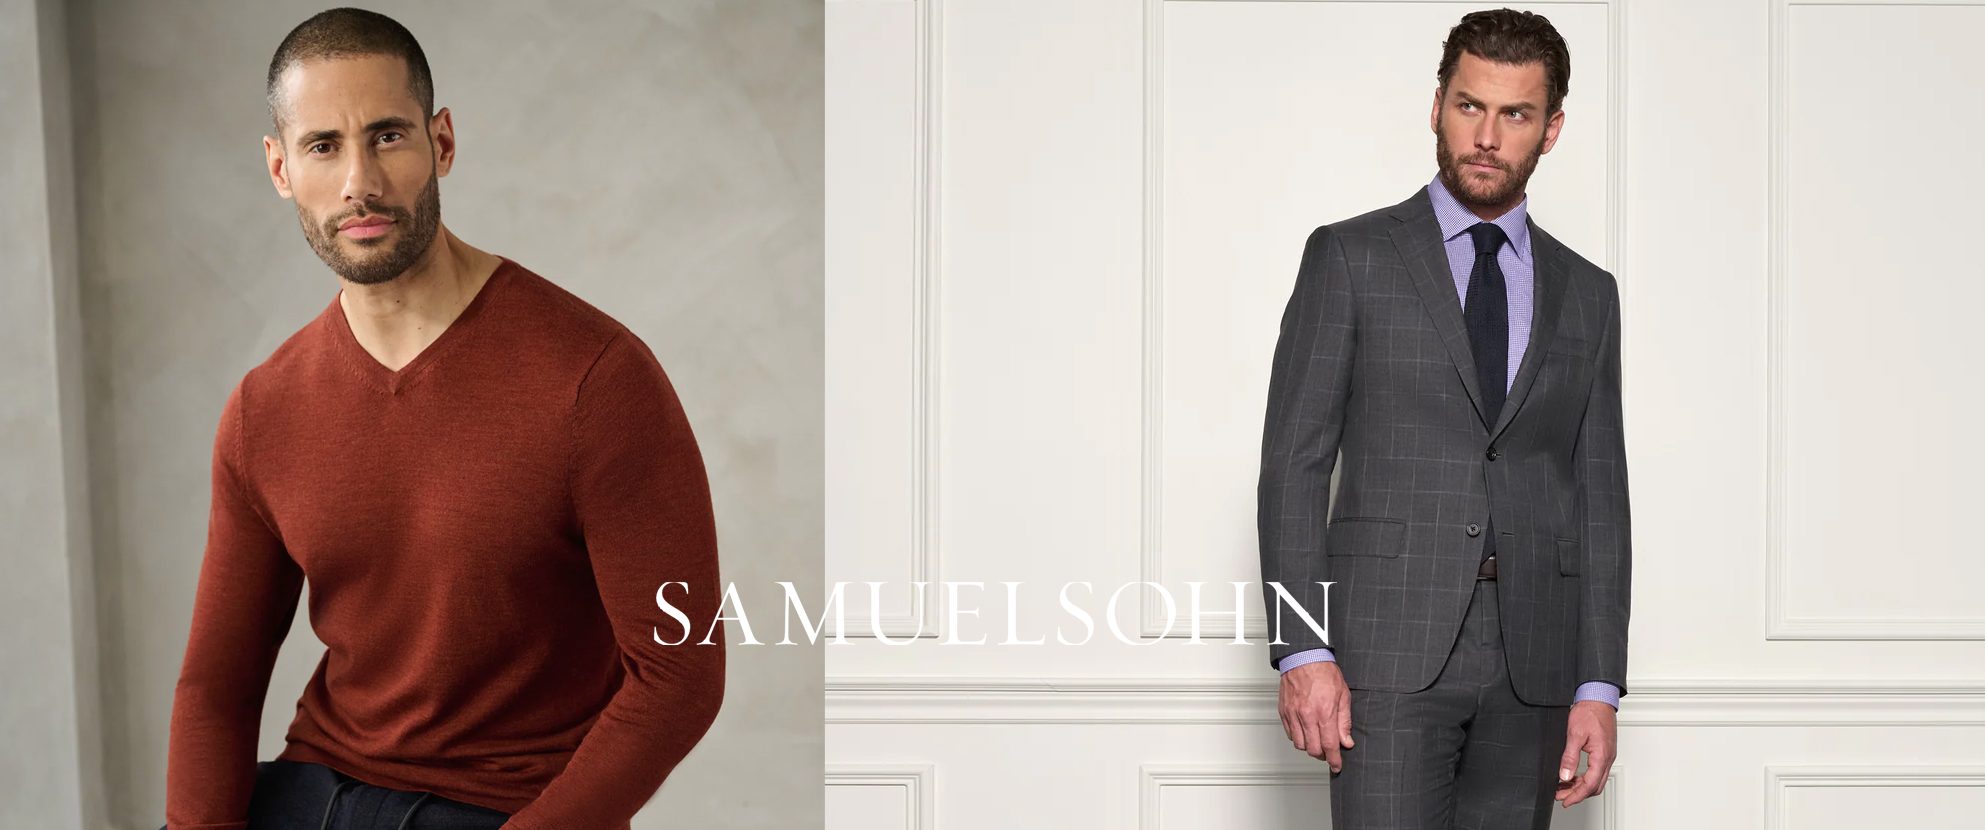 Craig Ryan Fine Clothing for Men & Women Samuelsohn Models